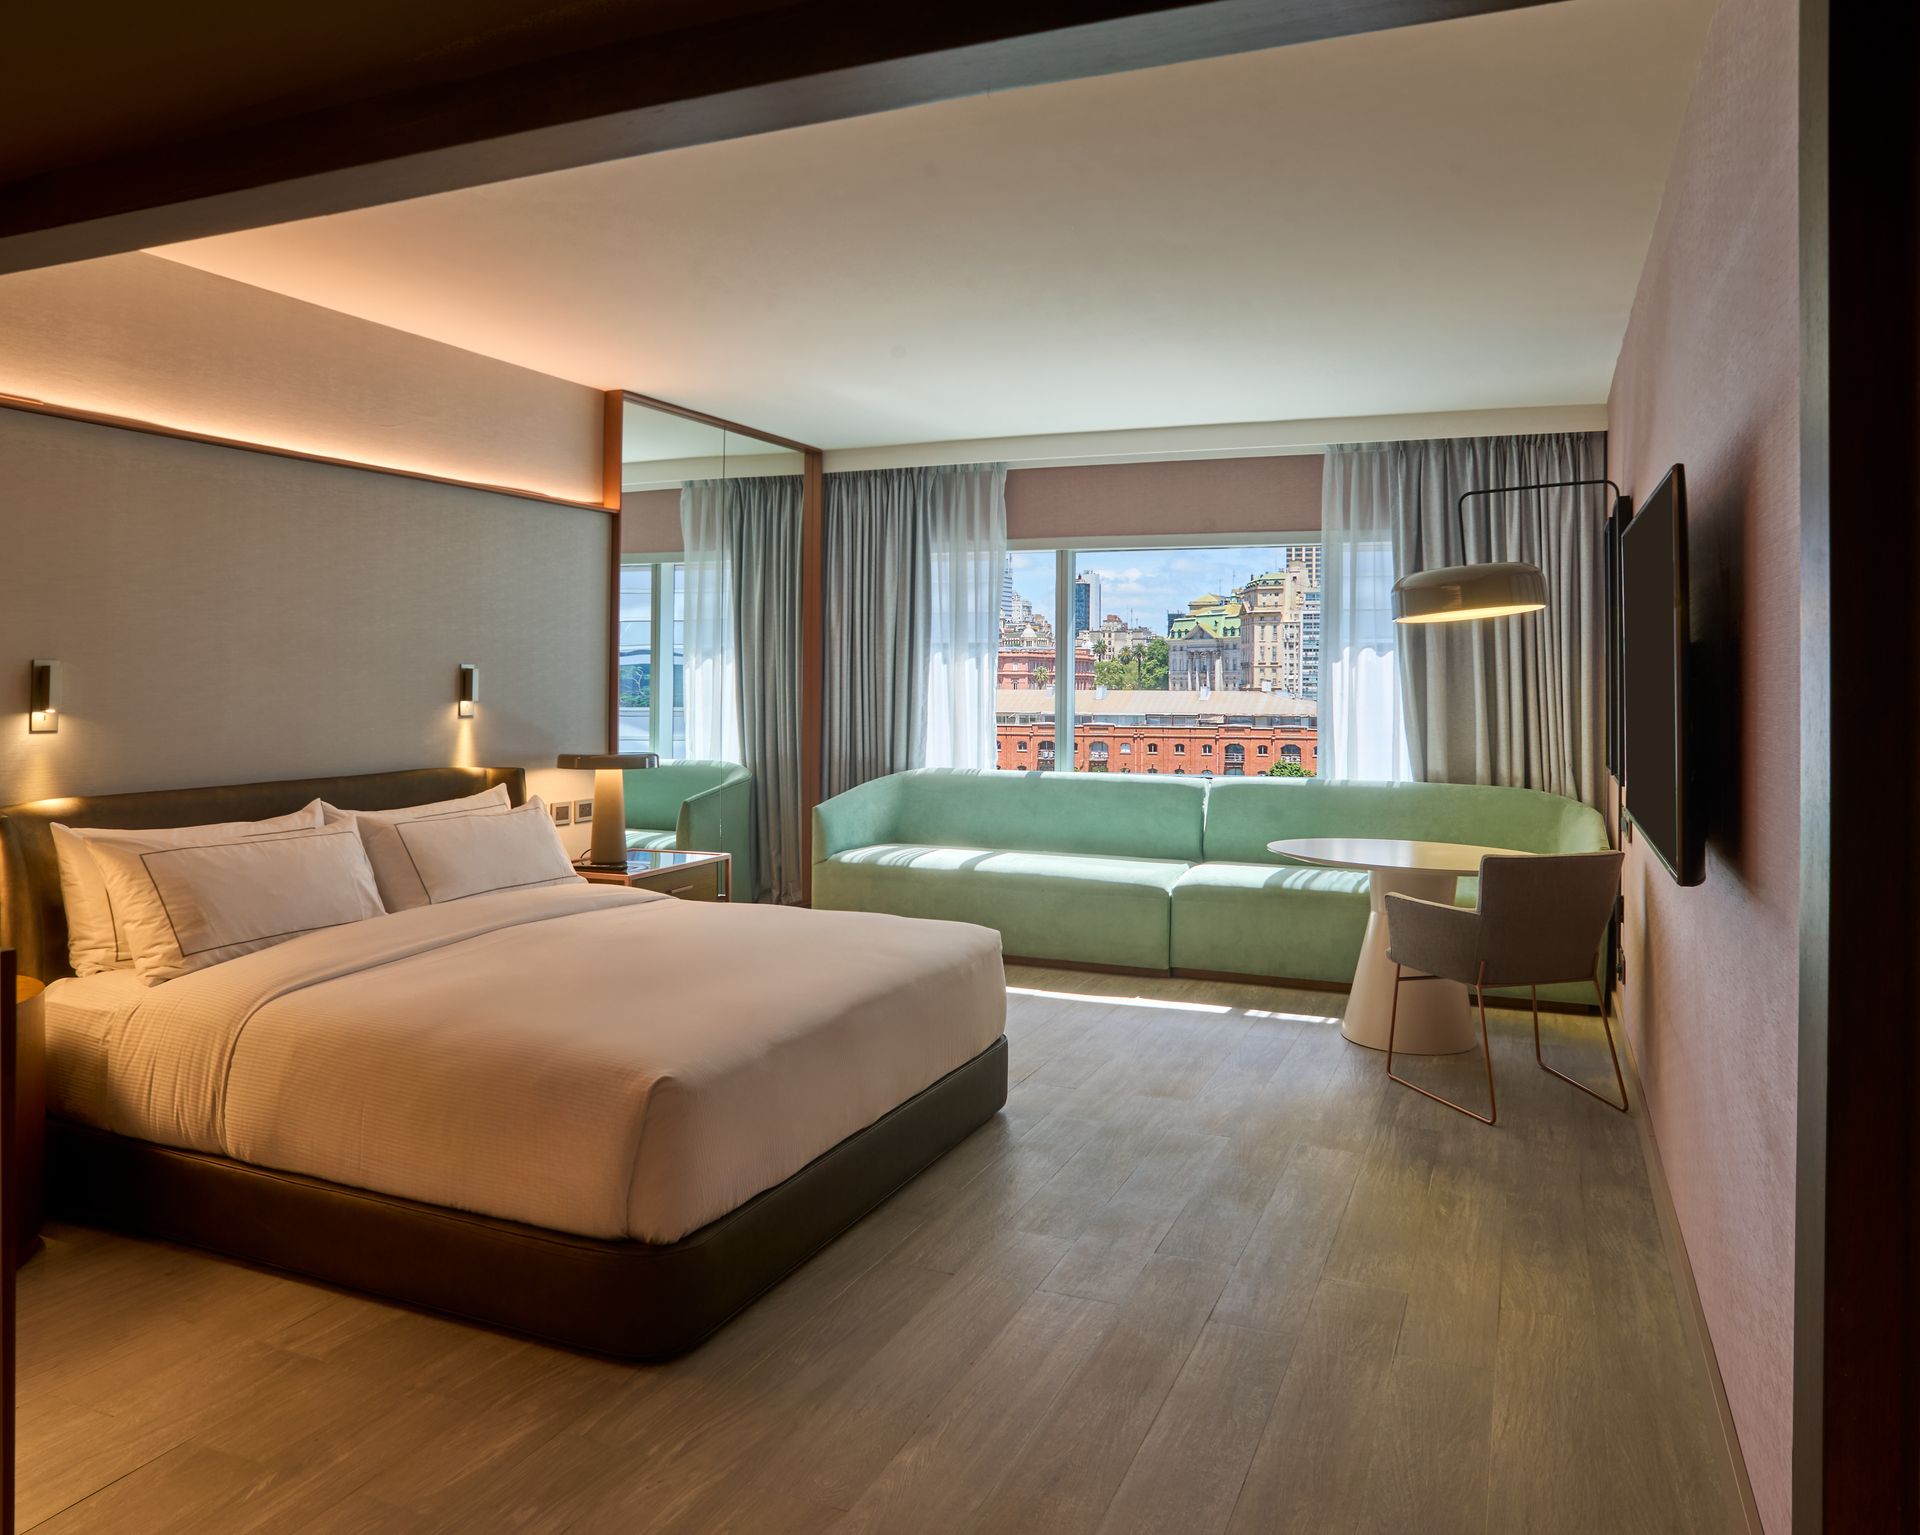 Una habitación de hotel con una cama king size y un sofá verde.